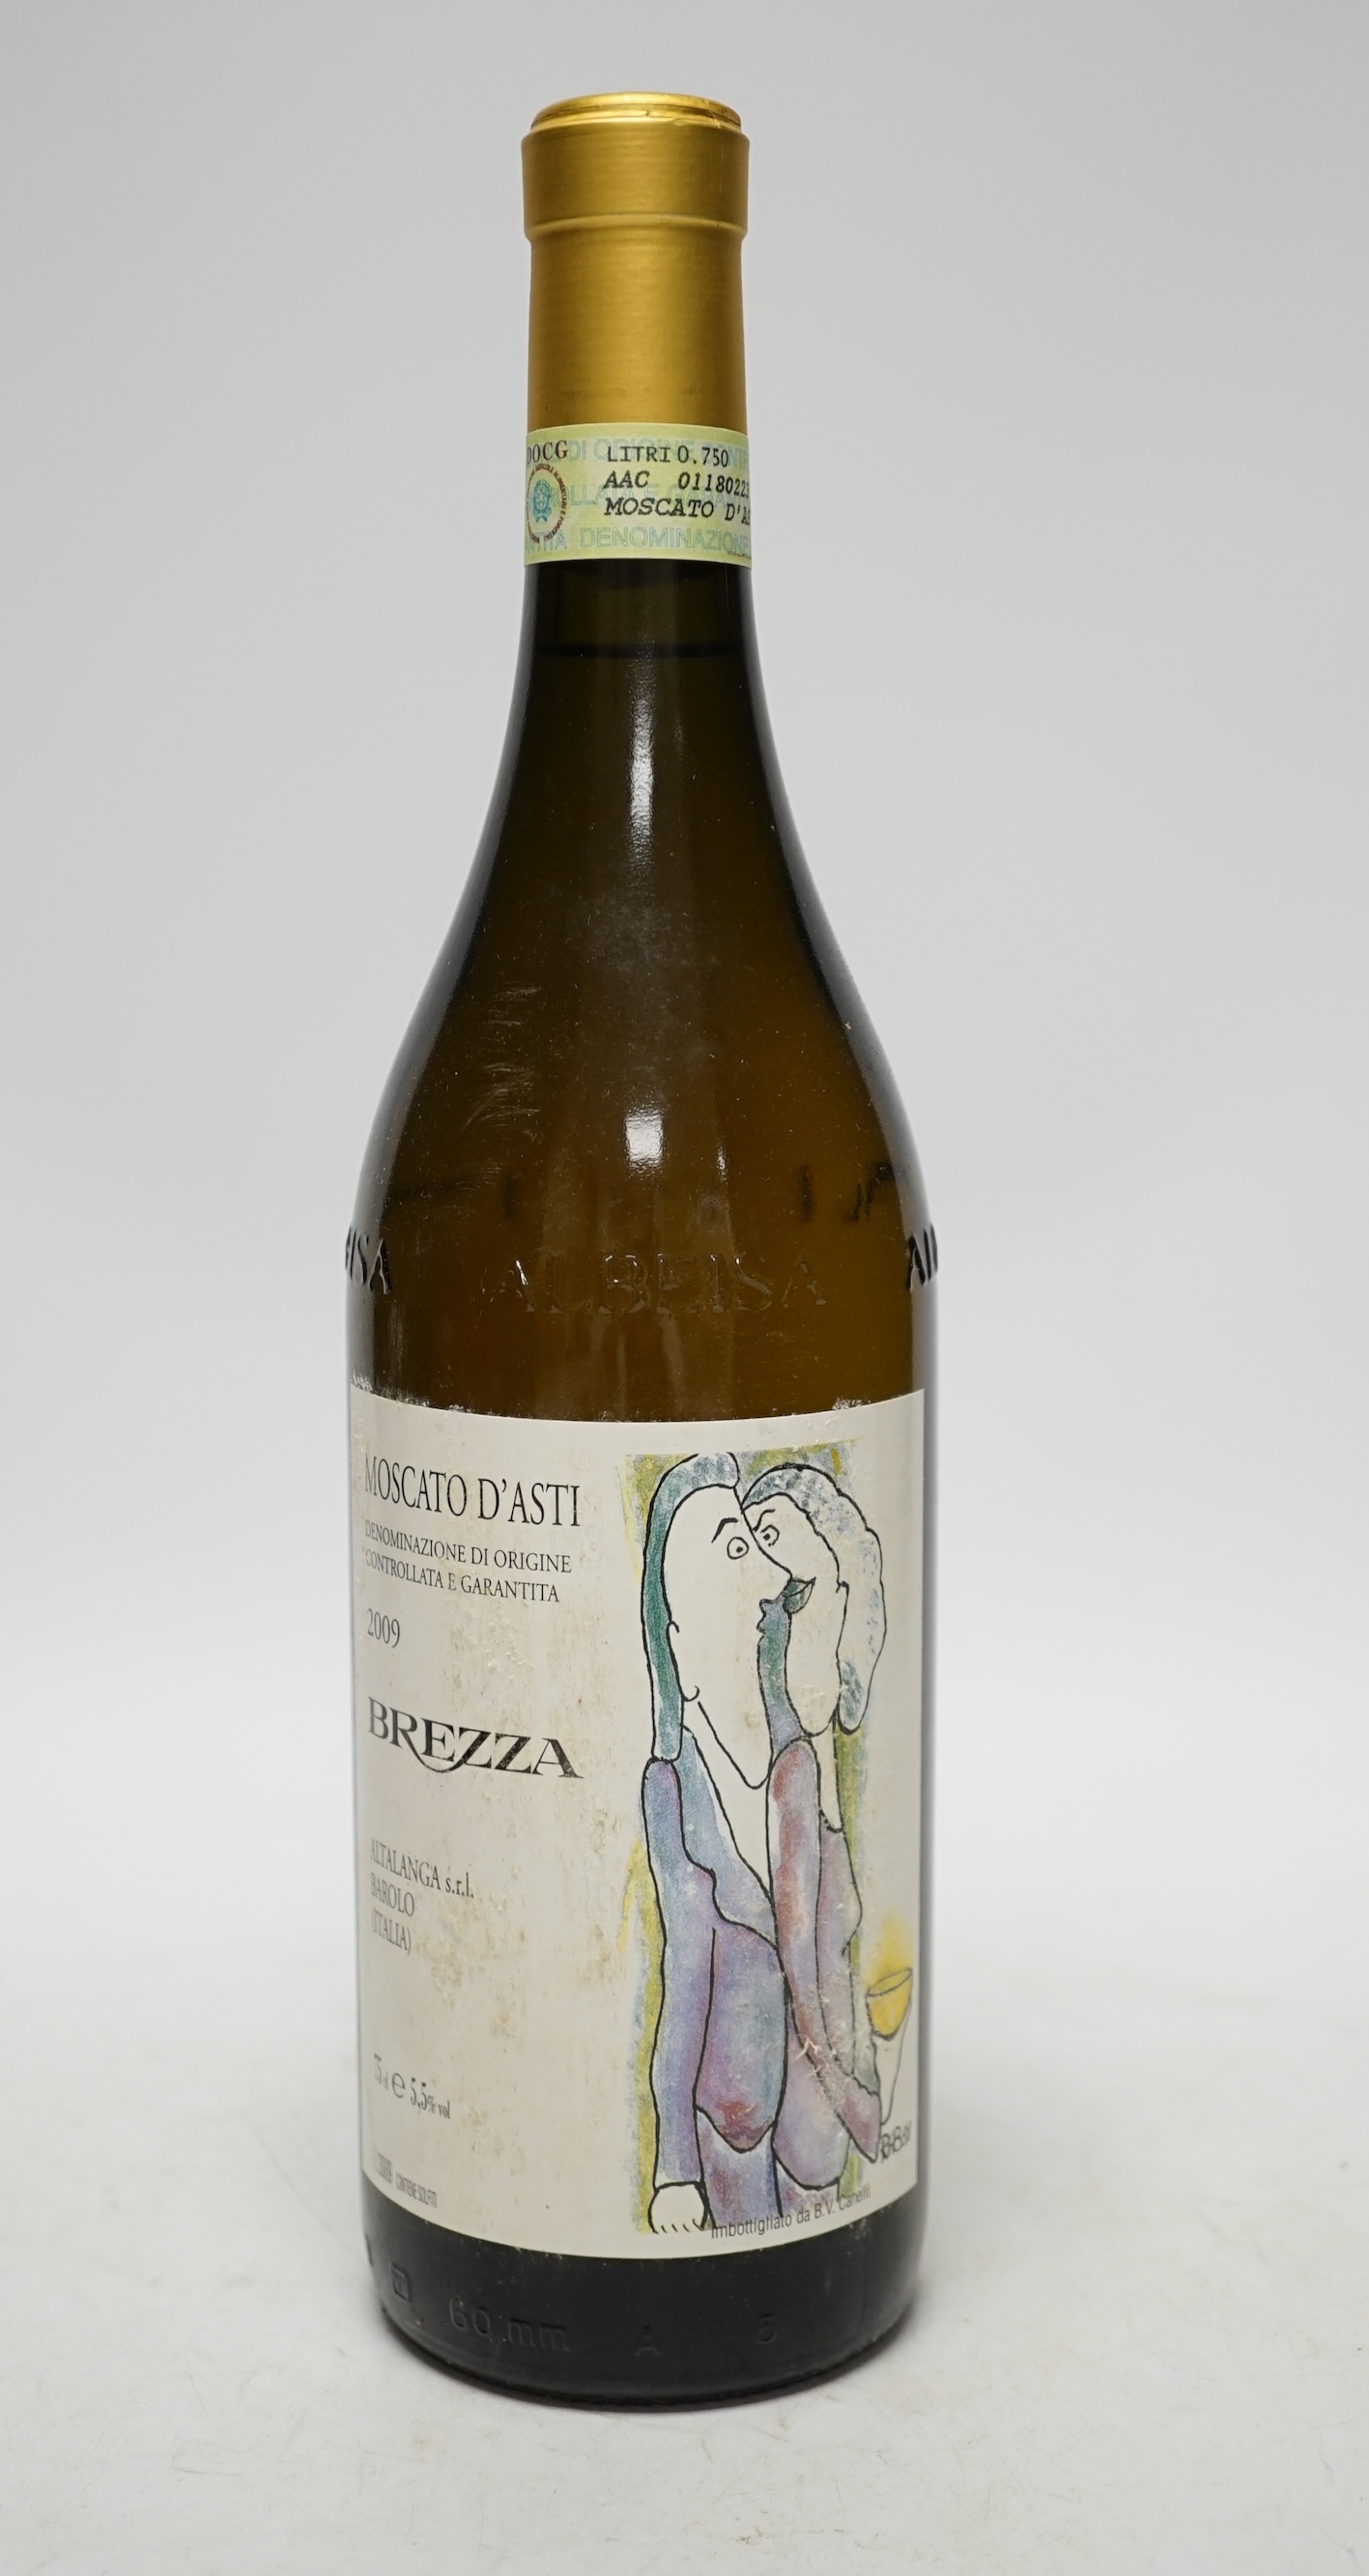 Eighteen bottles of Moscato D’Asti Brazzaville 2009